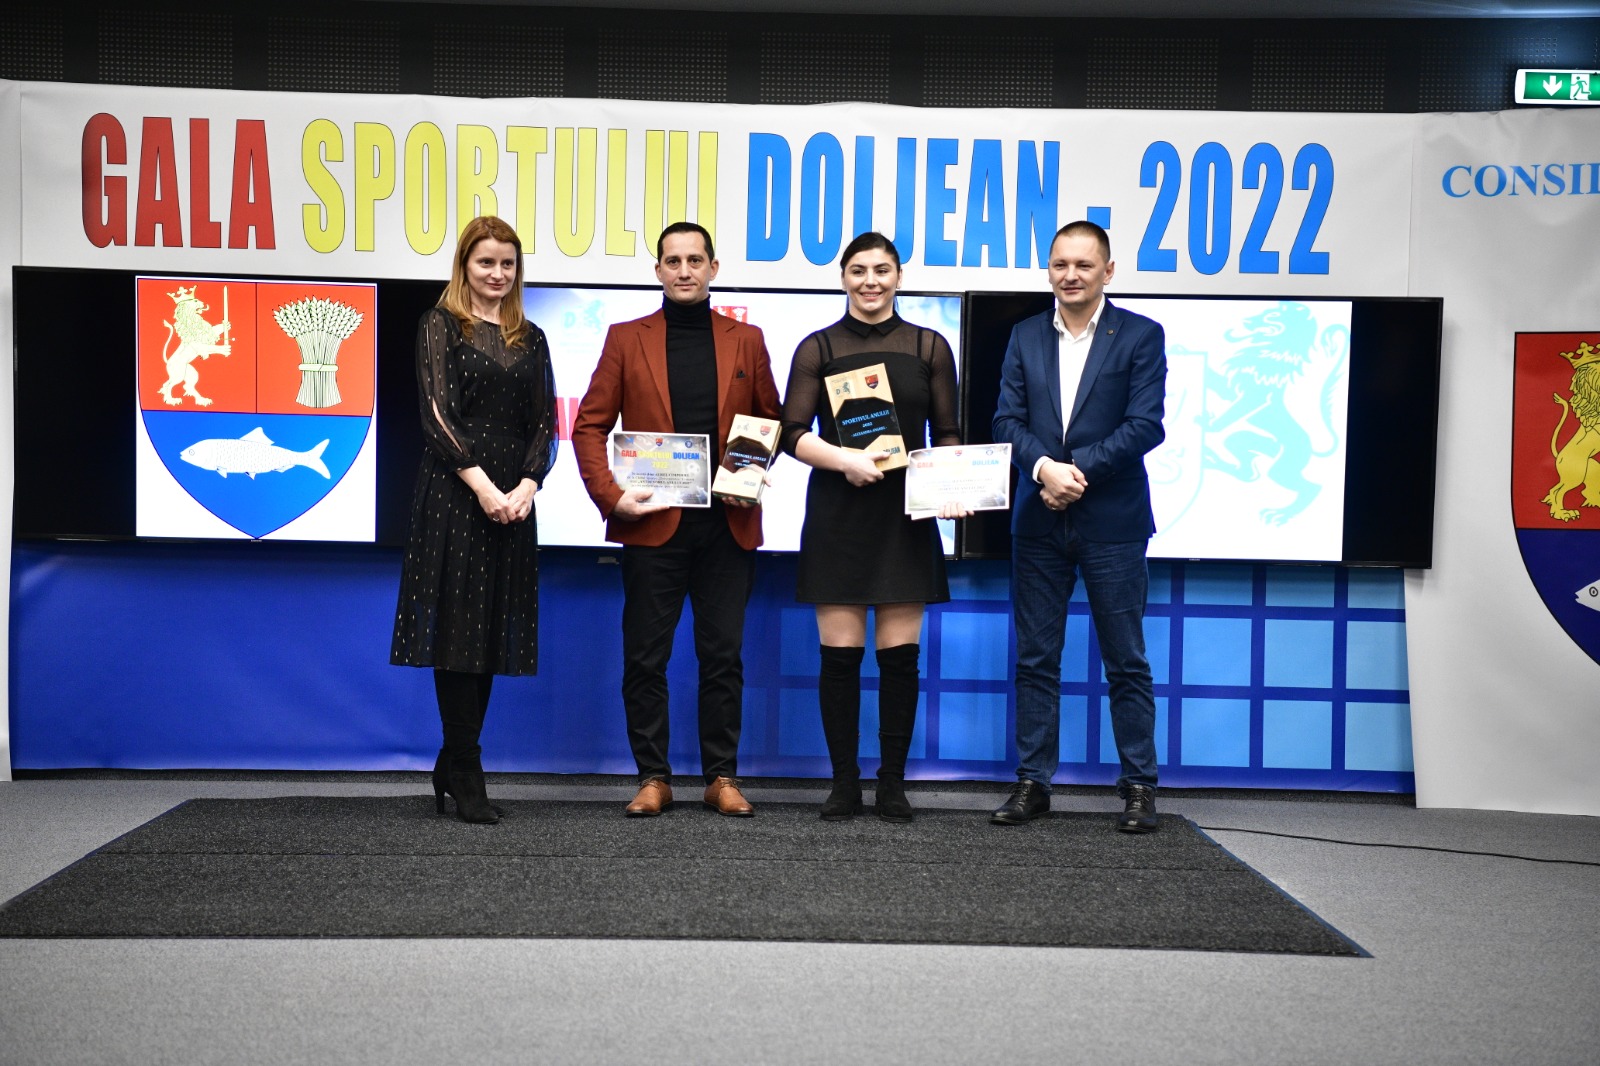 Gala Sportului Doljean şi-a desemnat câştigătorii pe anul 2022